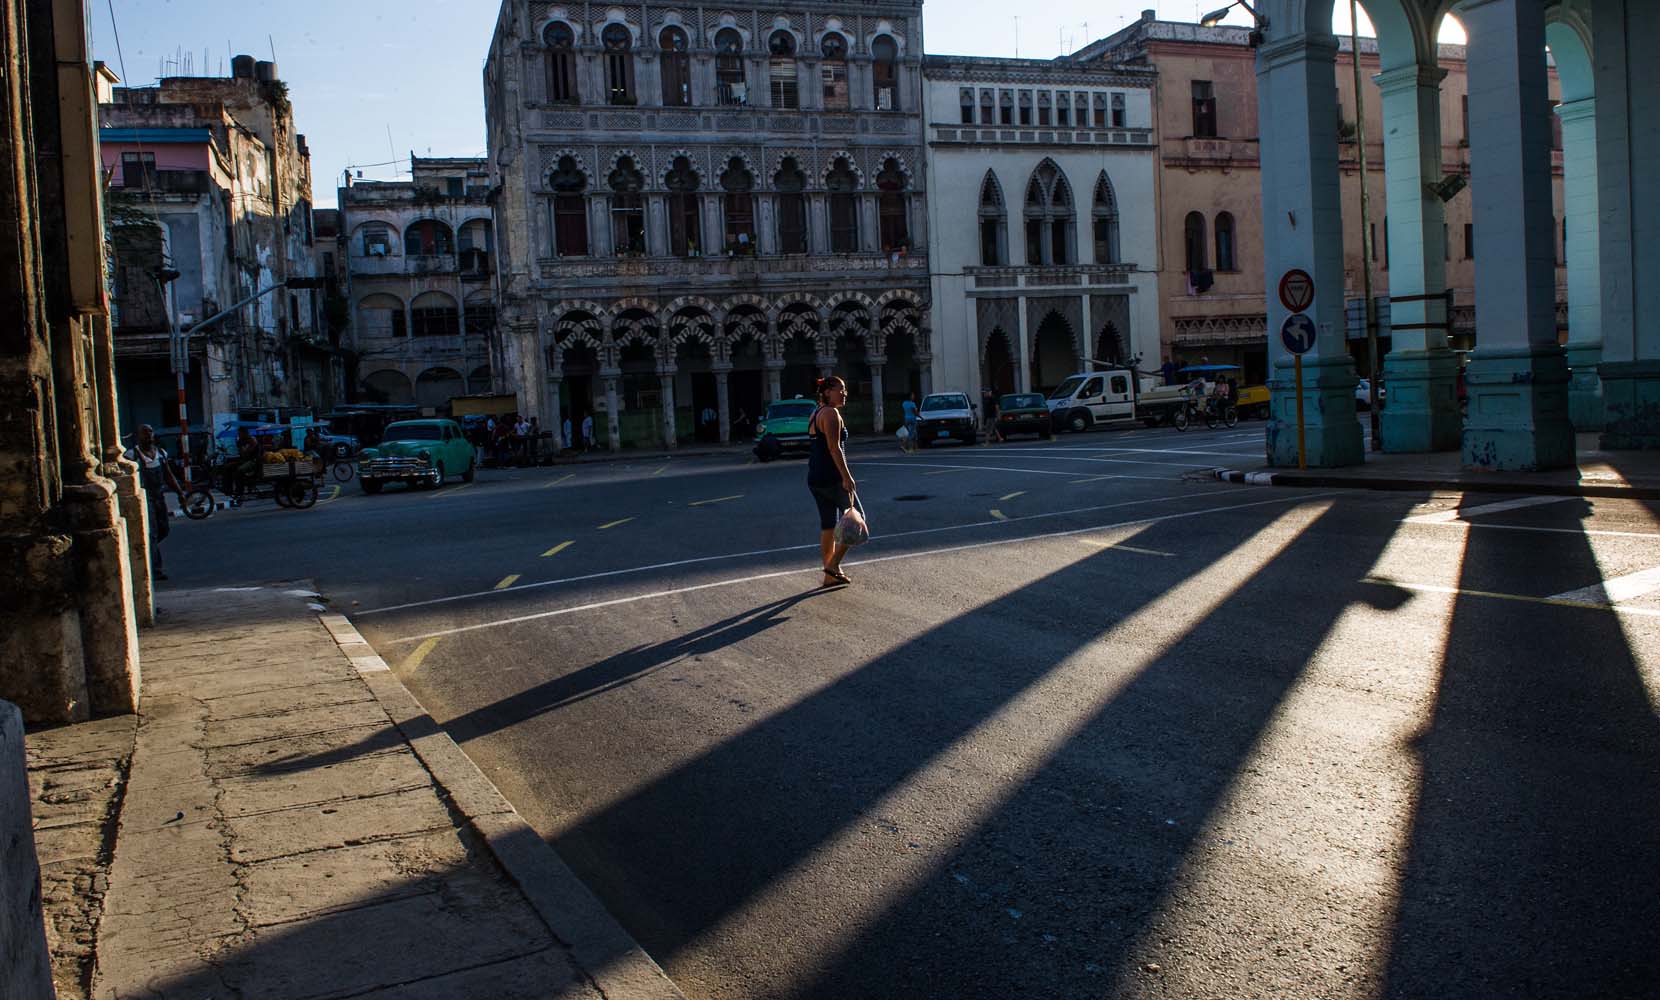 Detenida en el tiempo, La Habana navega hacia sus 500 años (fotos)